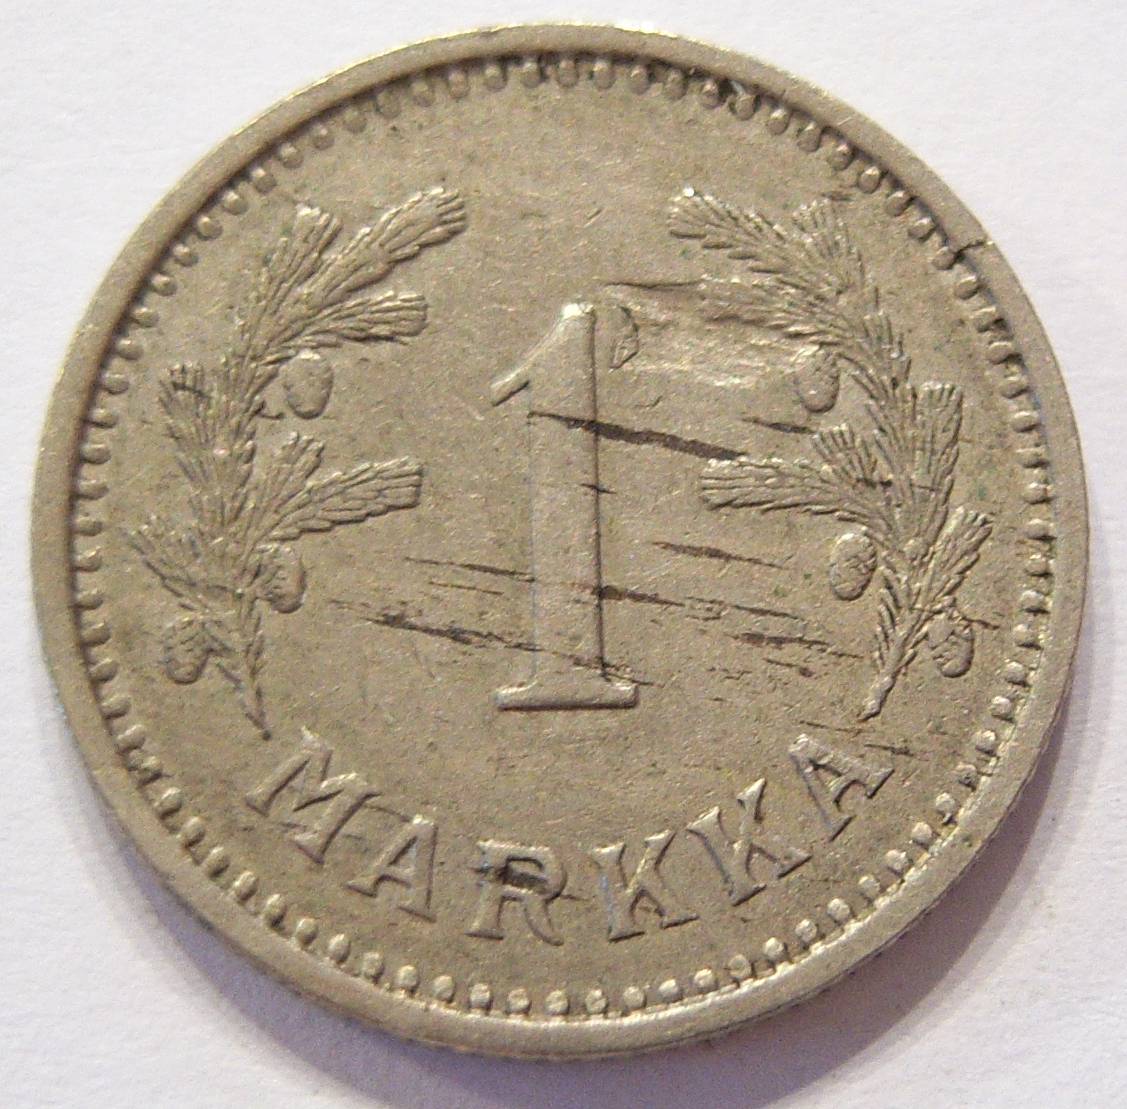  Finnland 1 Markka 1933   